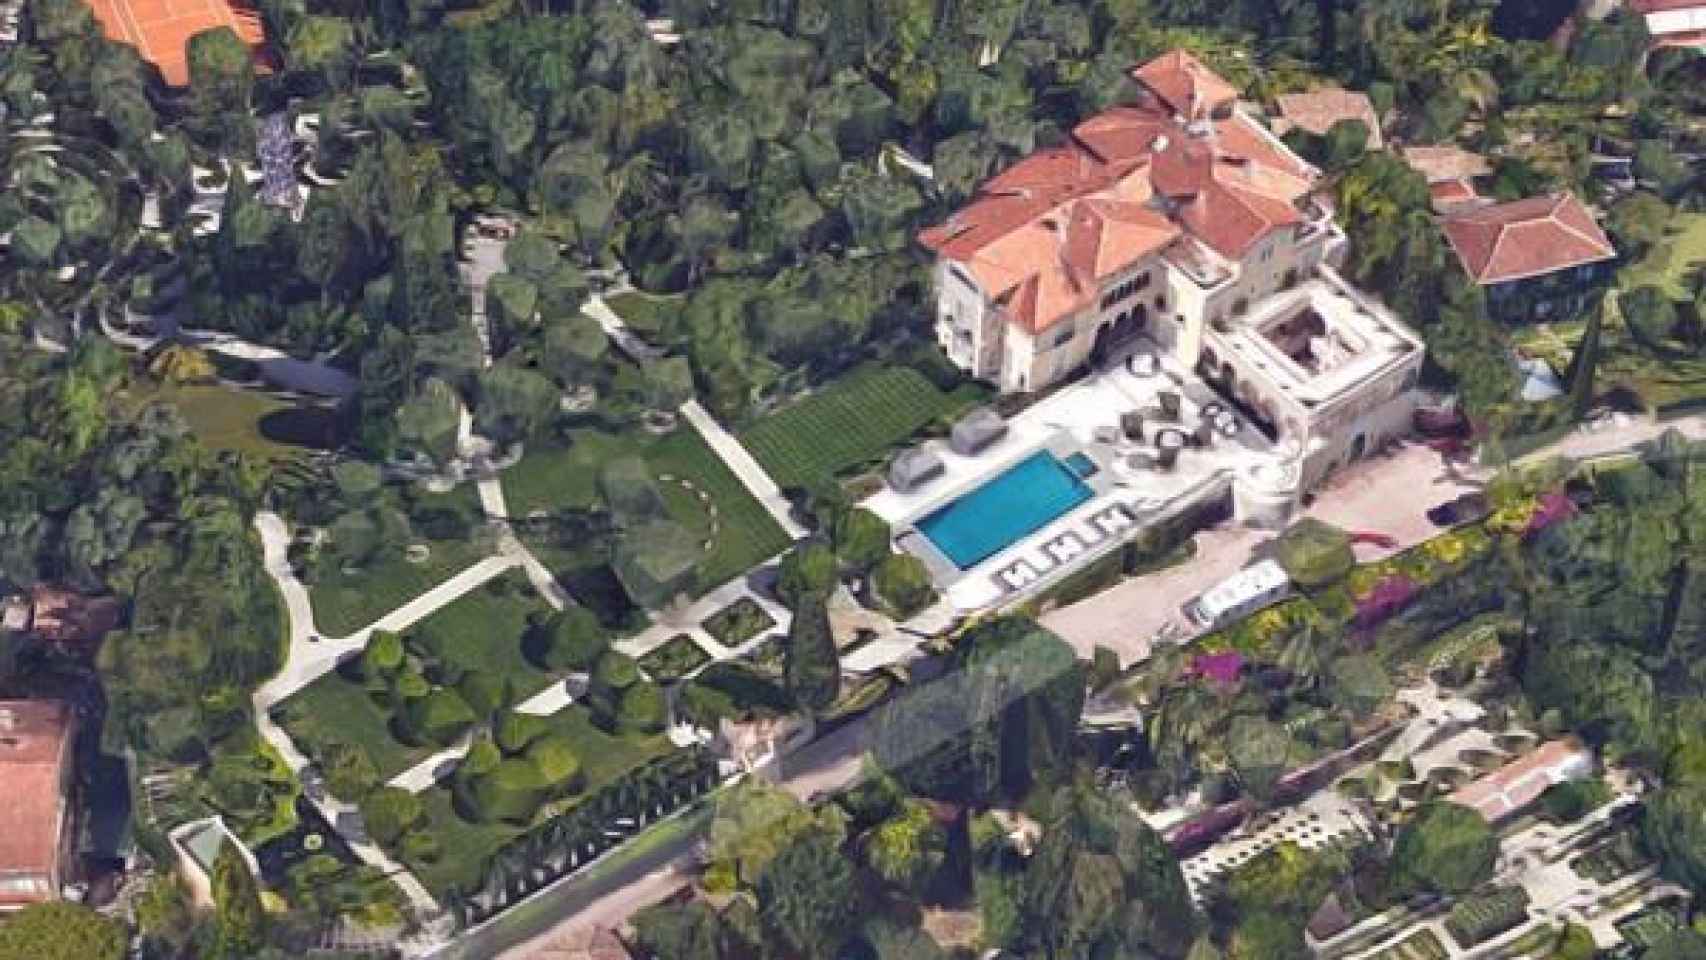 Vista aérea de la casa más cara del mundo y sus impresionantes jardines.